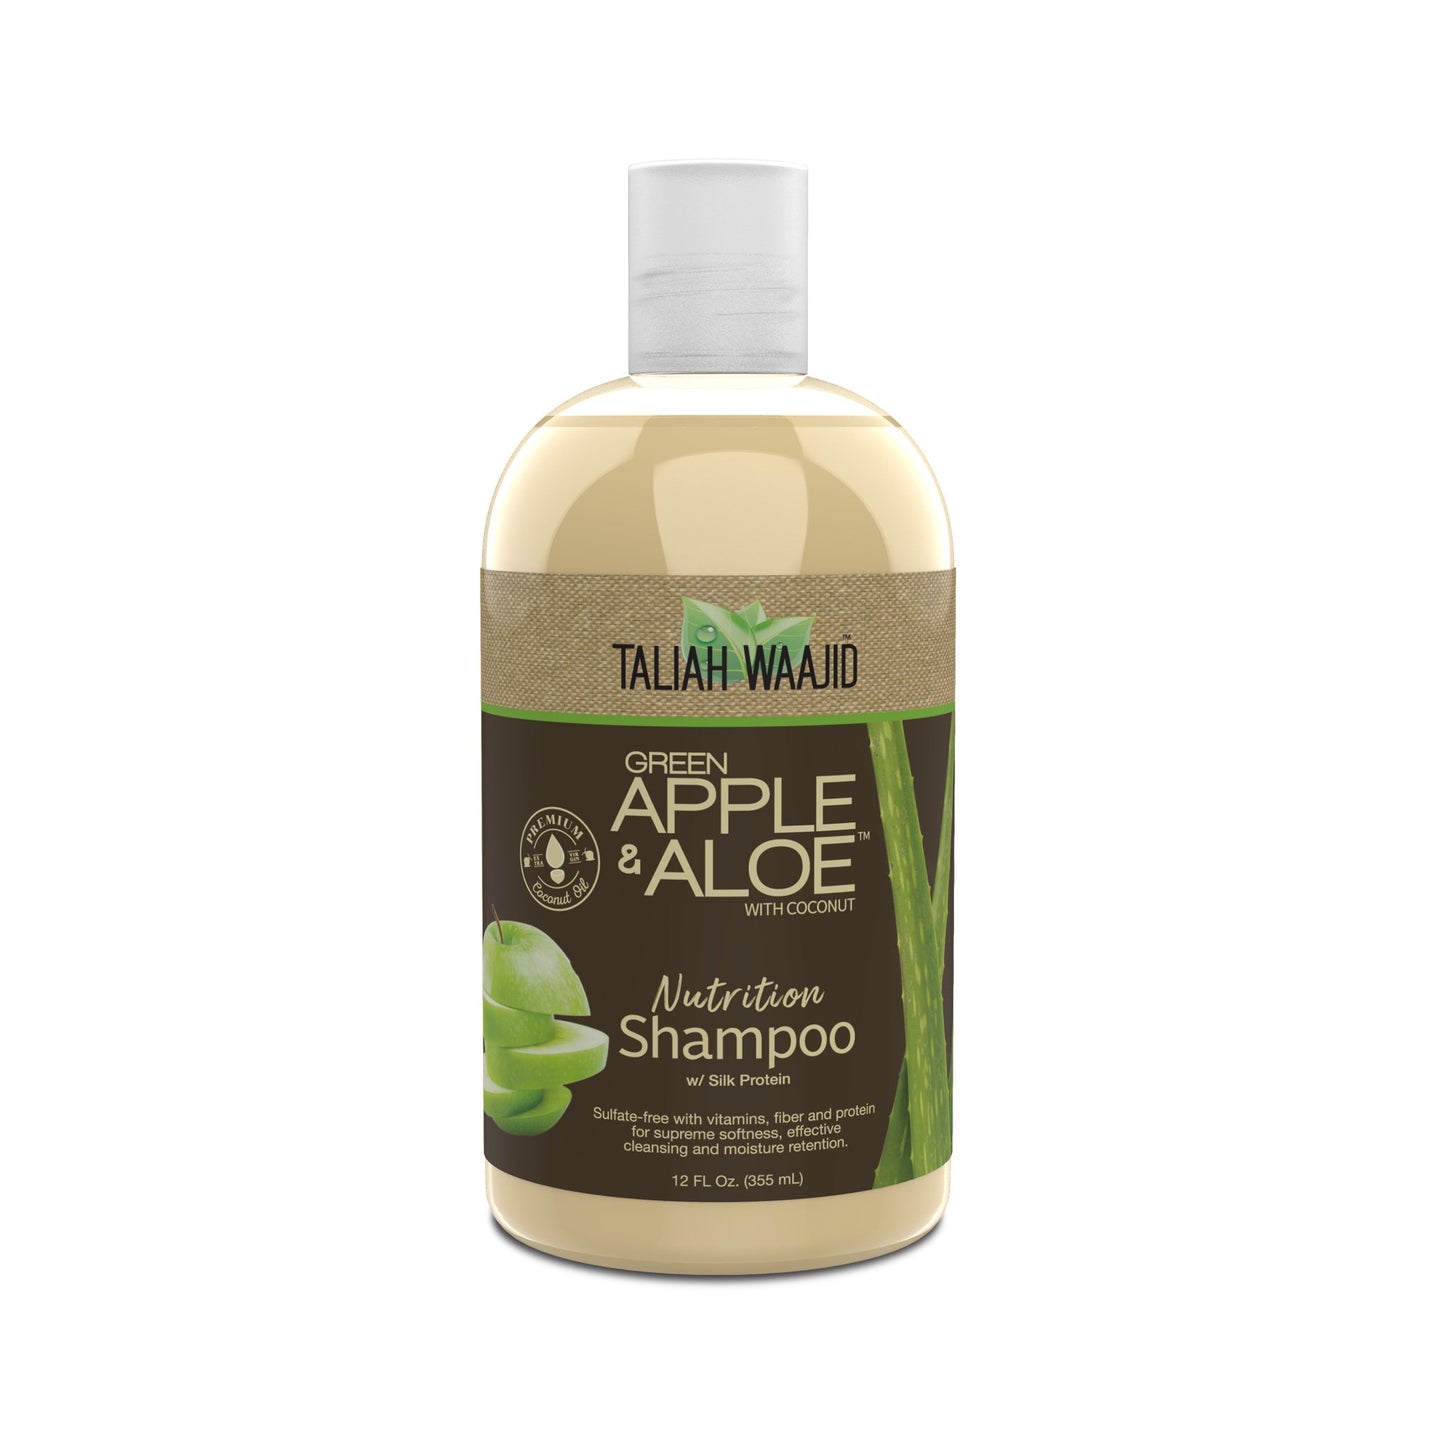 Taliah Waajid: Green Apple&Aloe with Coconut Shampoo